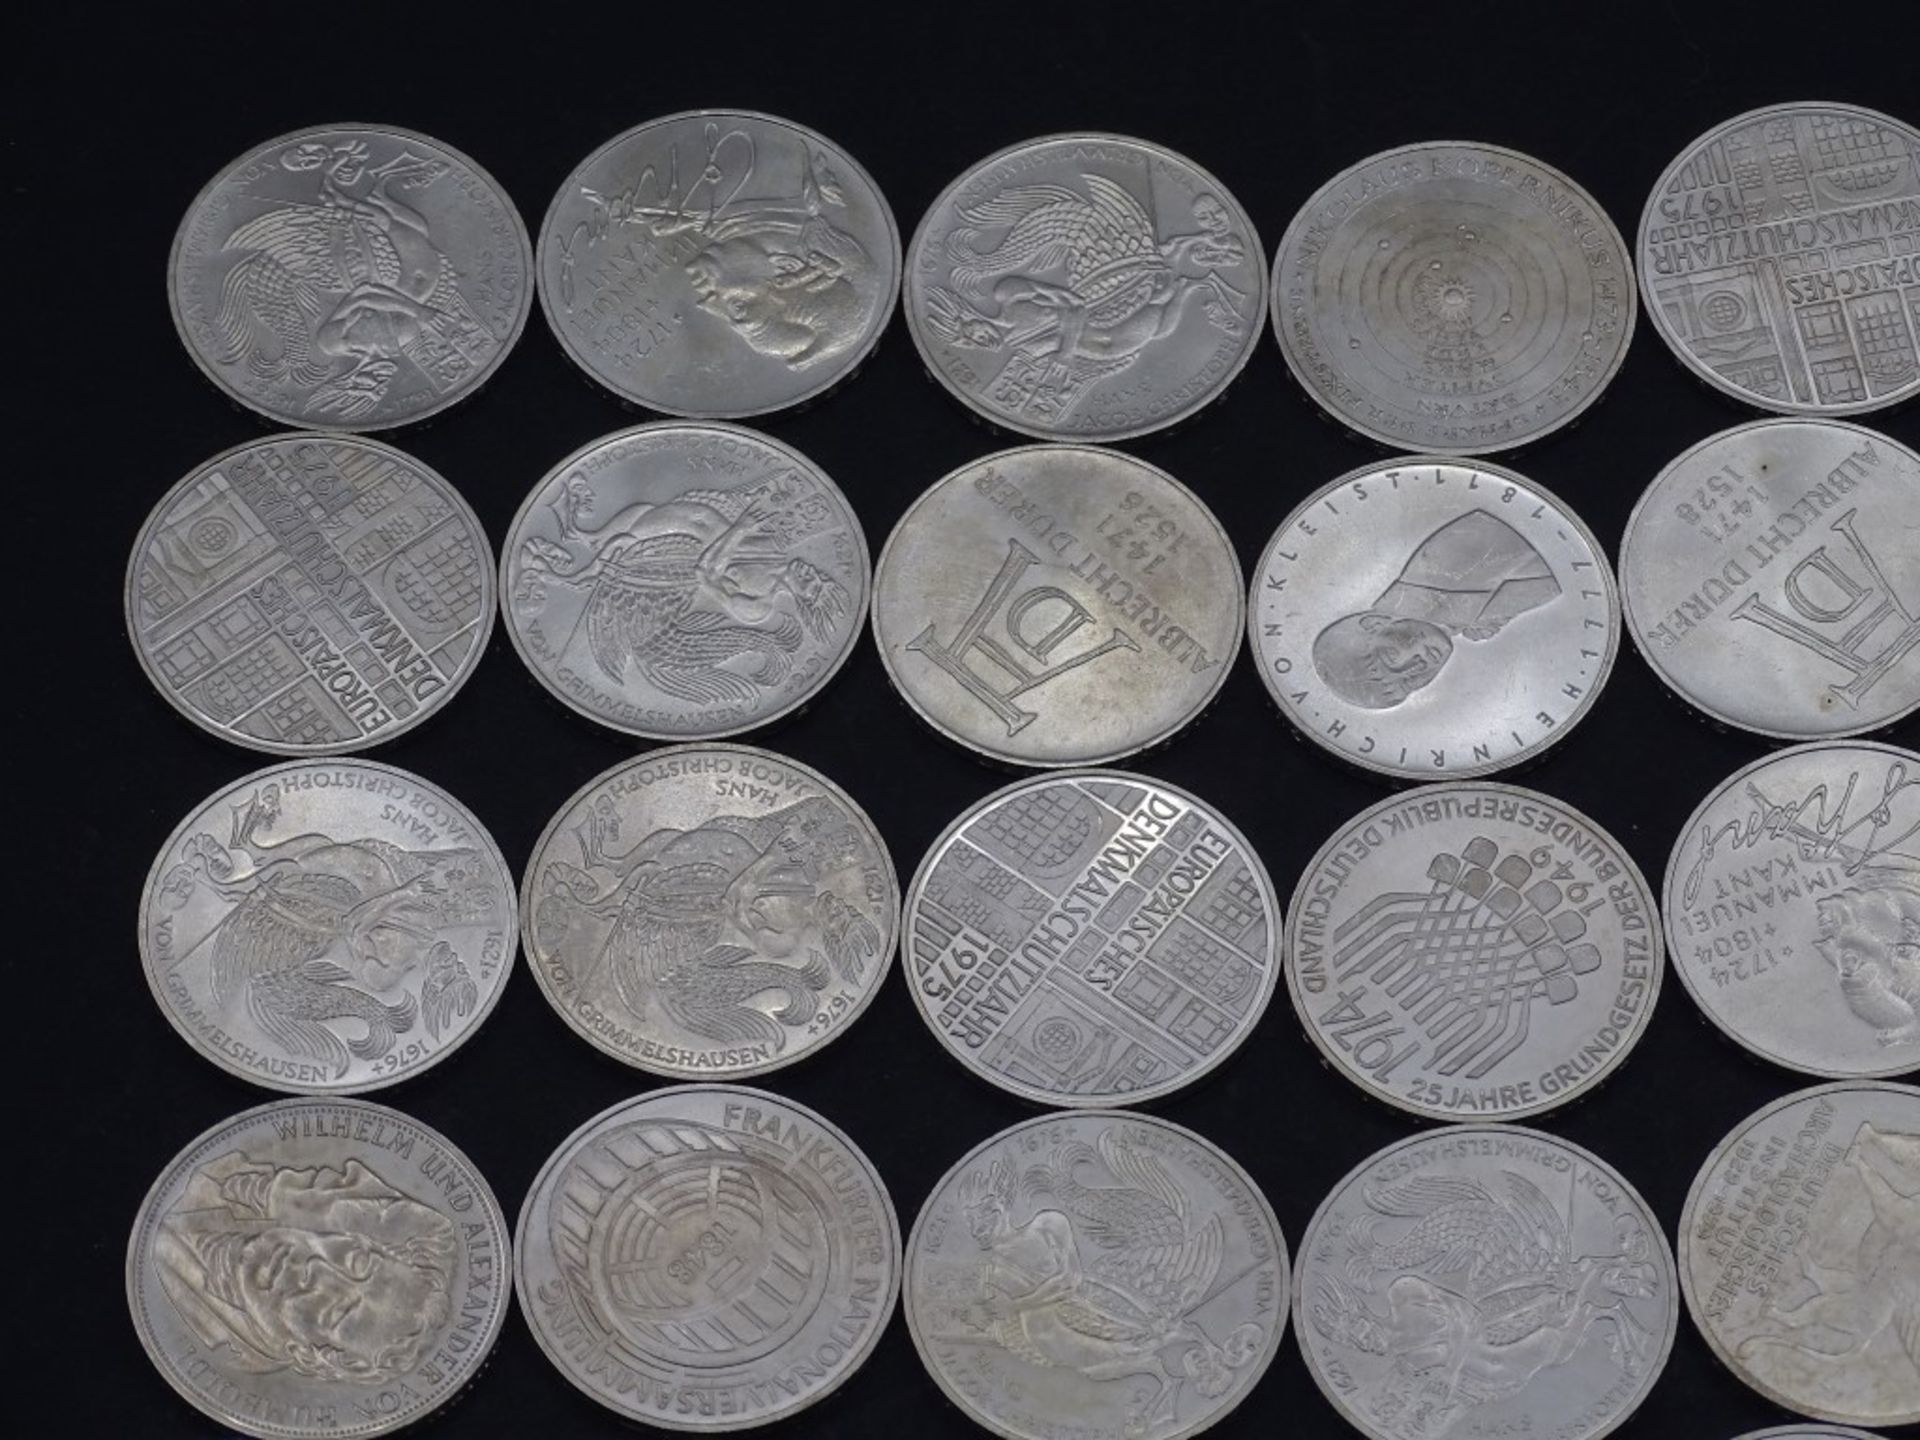 40x 5 DM Münzen,Silber,ges. 200 Deutsche Mar - Bild 2 aus 9